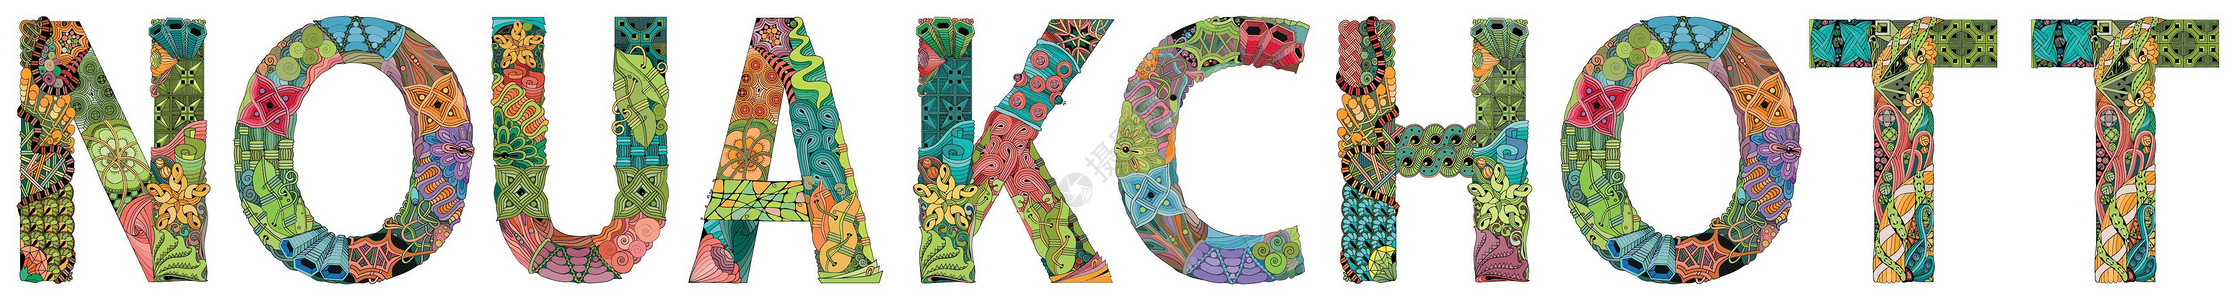 谁是高手字体努瓦克肖特是毛里塔尼亚的首都和最大城市 用于装饰的矢量装饰 zentangle 对象插画